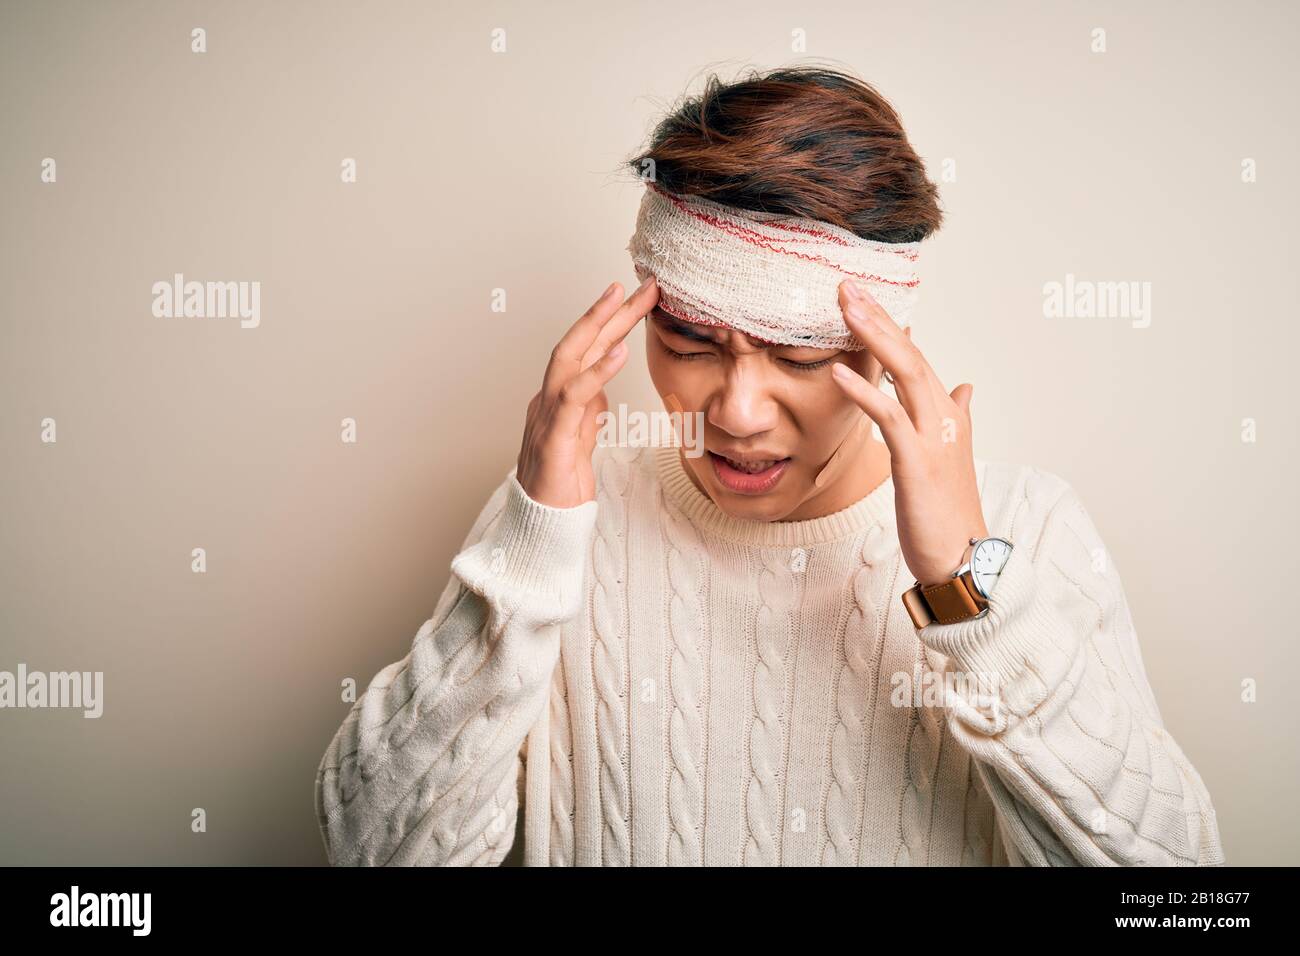 Un jeune homme chinois blessé à la main pour un accident portant un bandage et des bandes sur la tête avec des maux de tête parce que le stress. Migraine souffrant. Banque D'Images